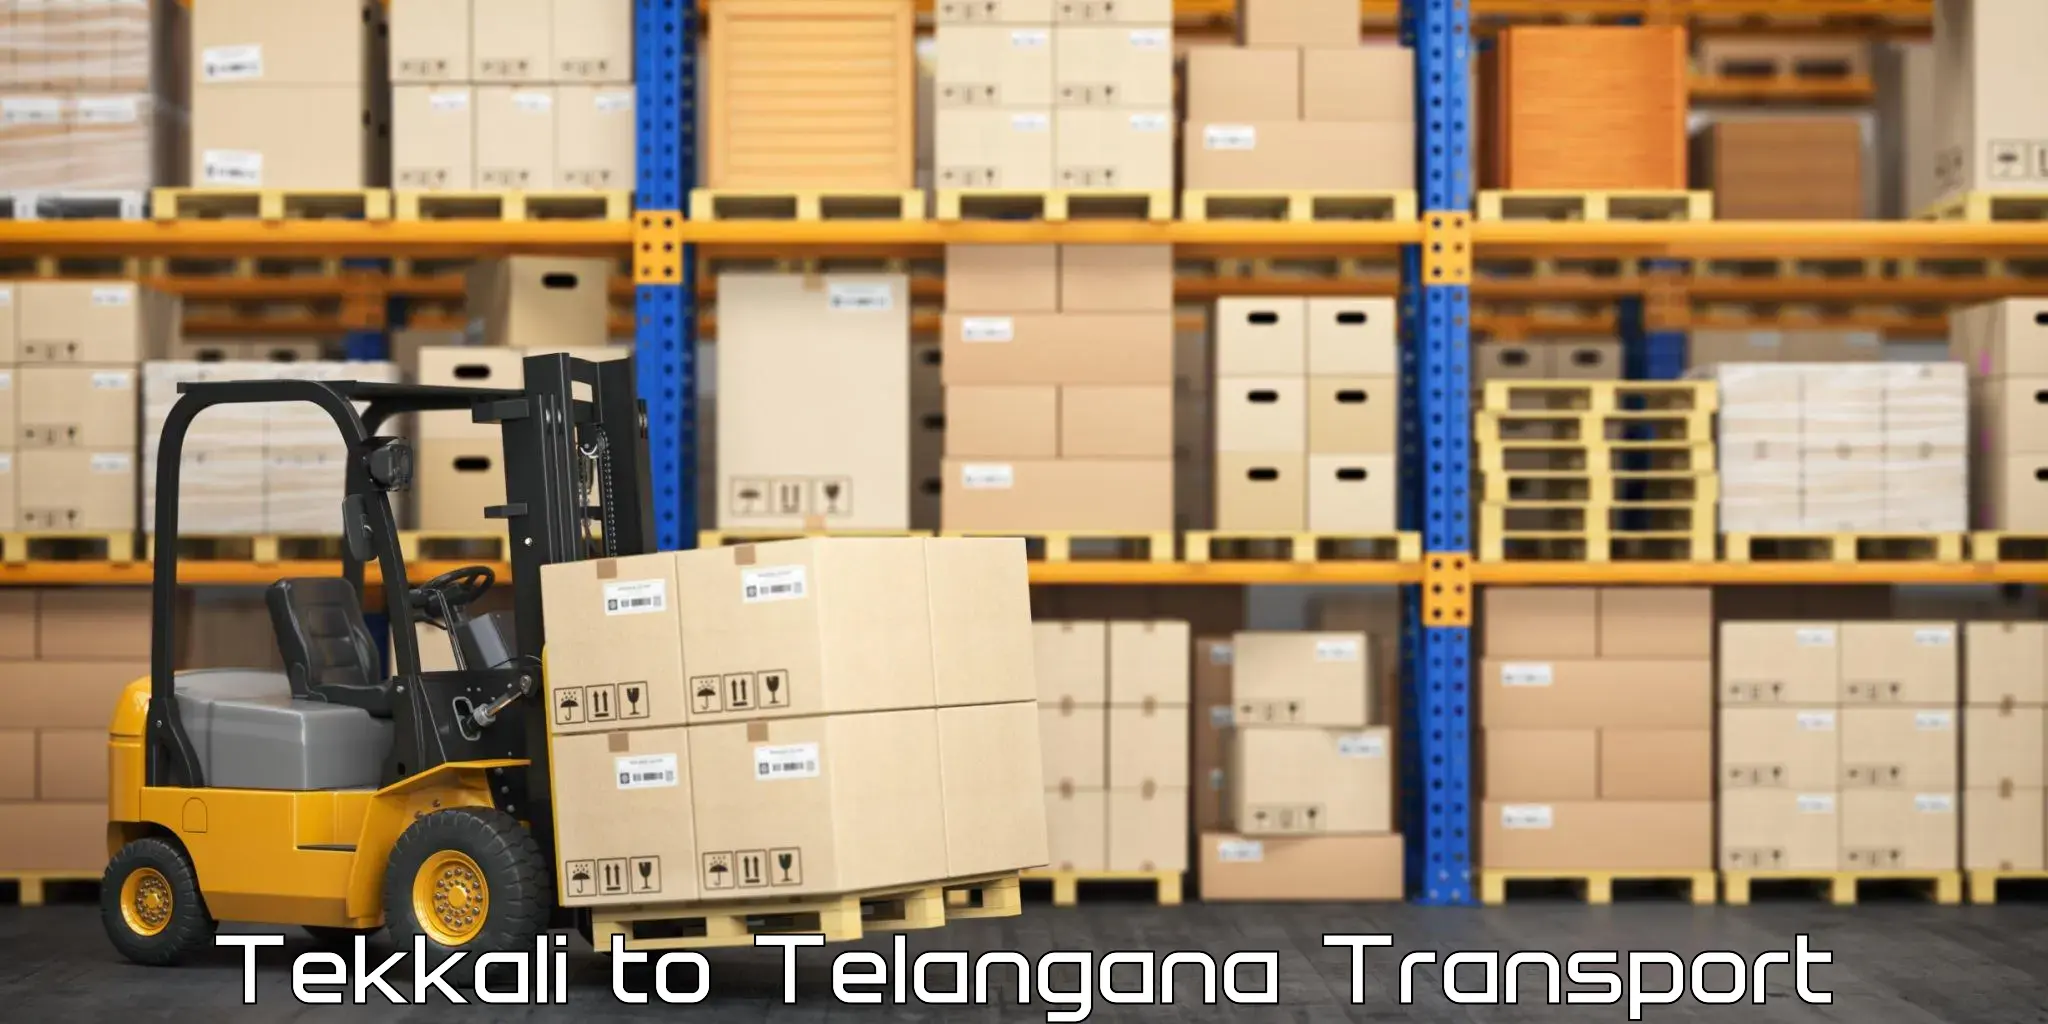 Transport in sharing Tekkali to Warangal